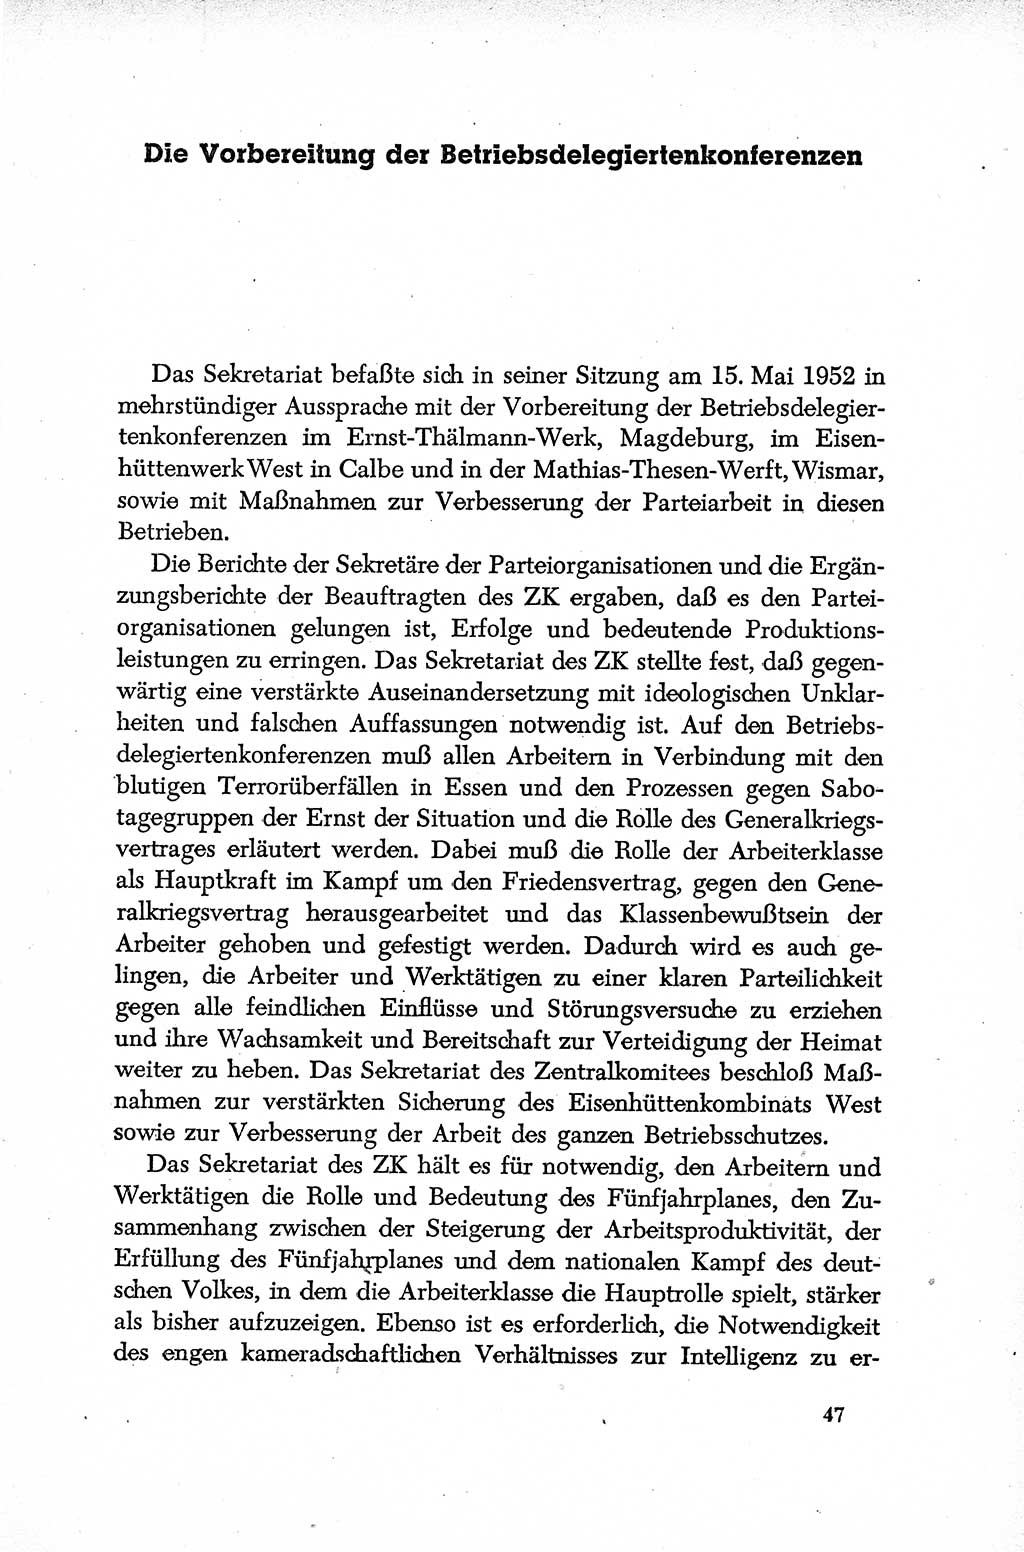 Dokumente der Sozialistischen Einheitspartei Deutschlands (SED) [Deutsche Demokratische Republik (DDR)] 1952-1953, Seite 47 (Dok. SED DDR 1952-1953, S. 47)